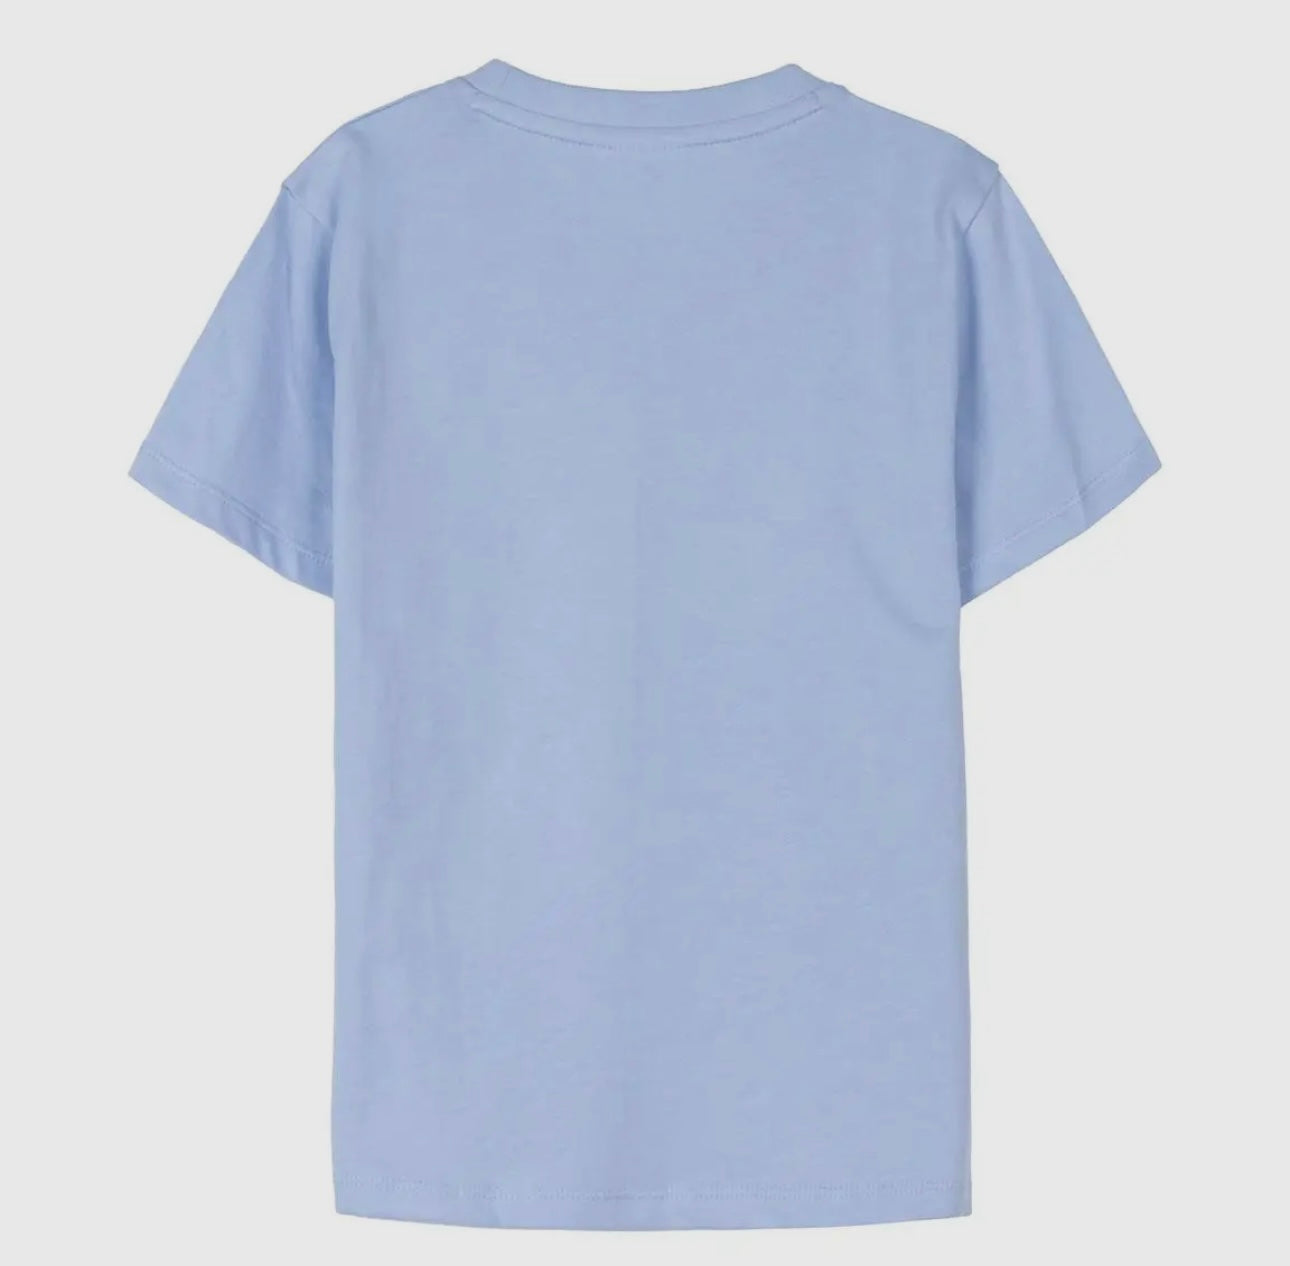 Bluey tshirt